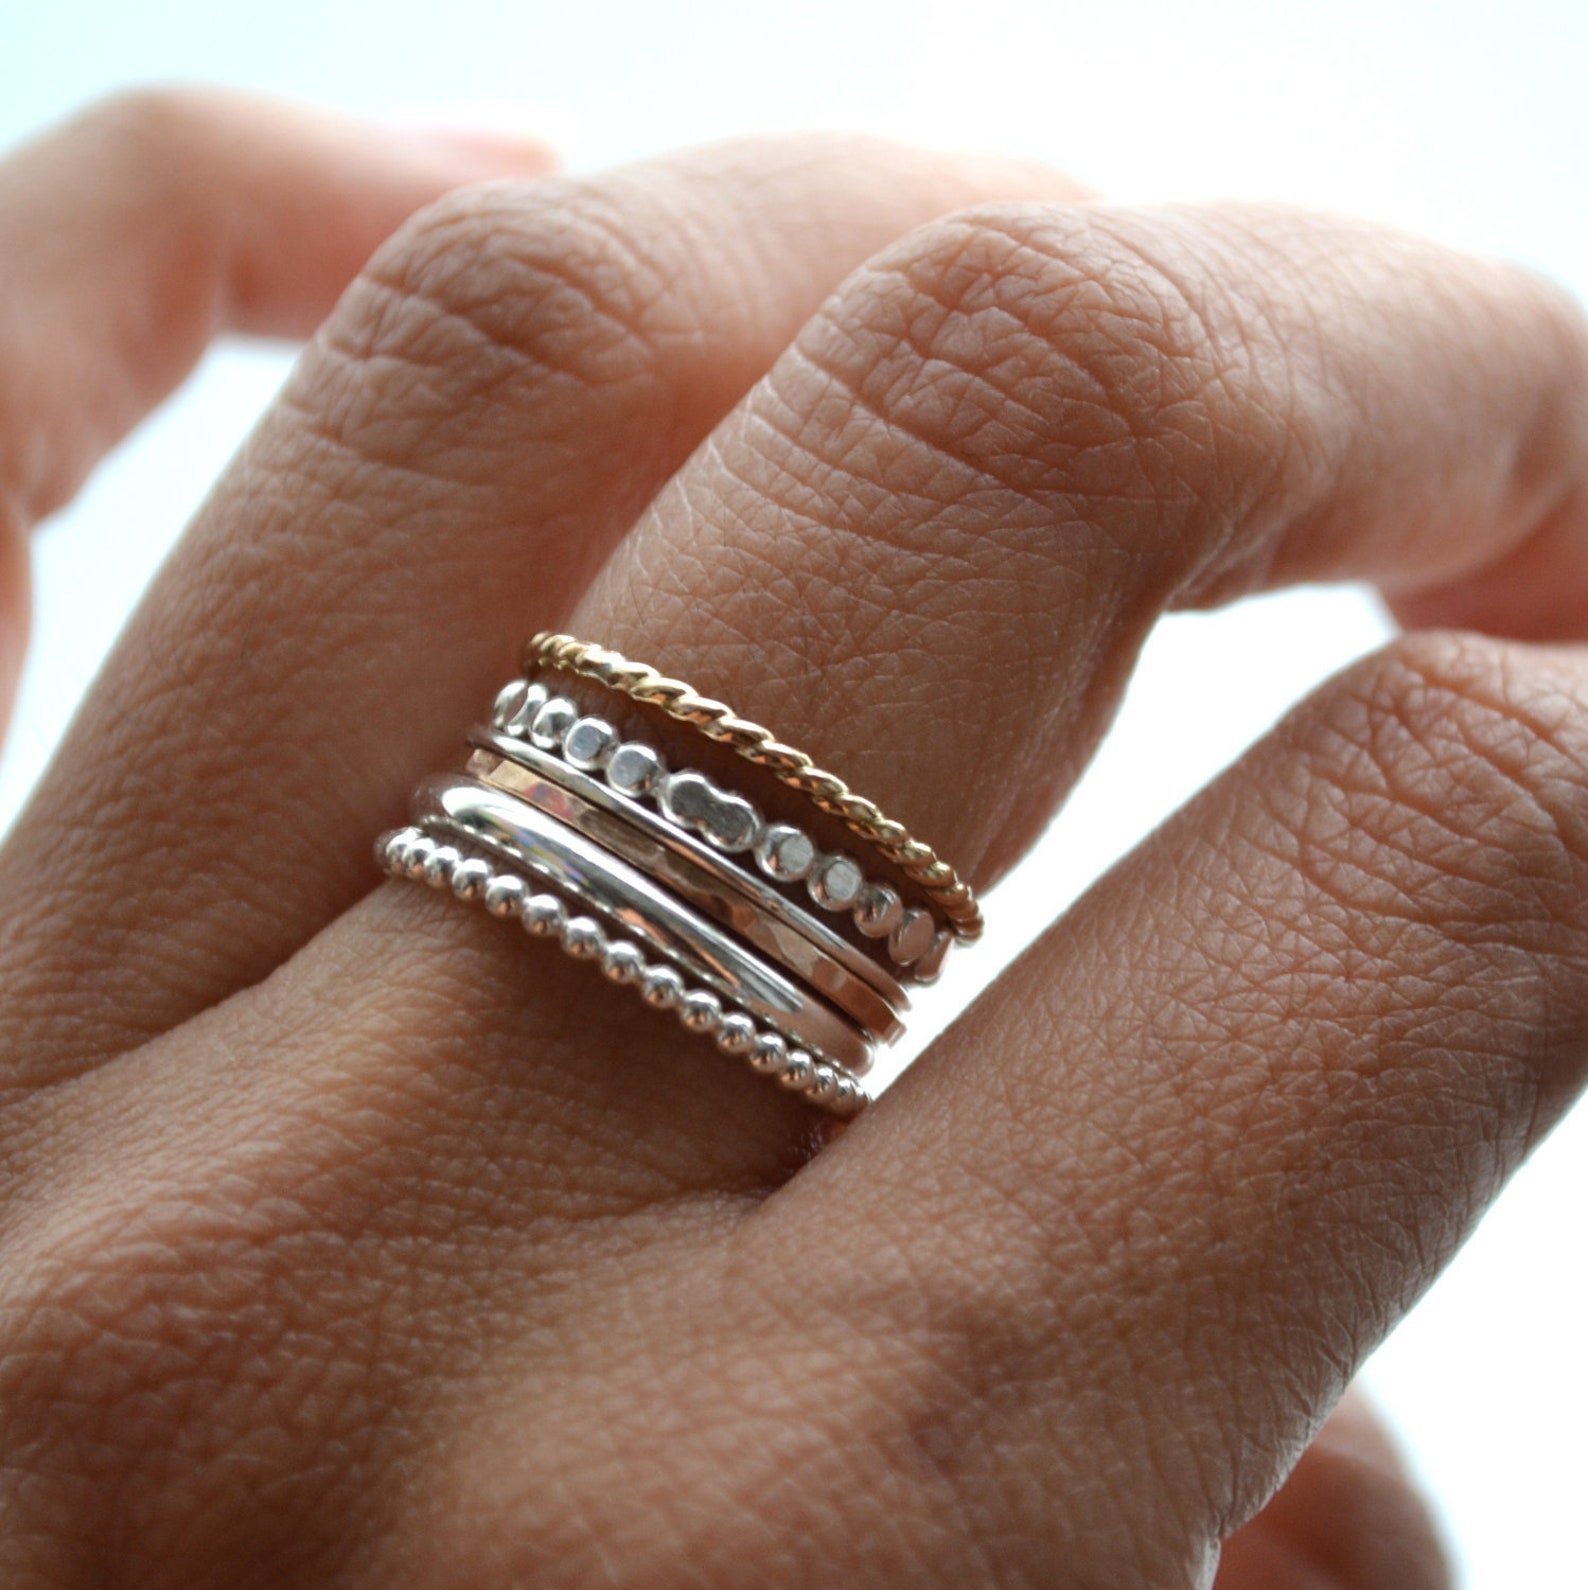 Можно обручальное кольцо серебряное. Сочетание золота и серебра кольца. Многослойное кольцо. Золотое и серебряное кольцо вместе. Золотые и серебряные кольца на одной руке.